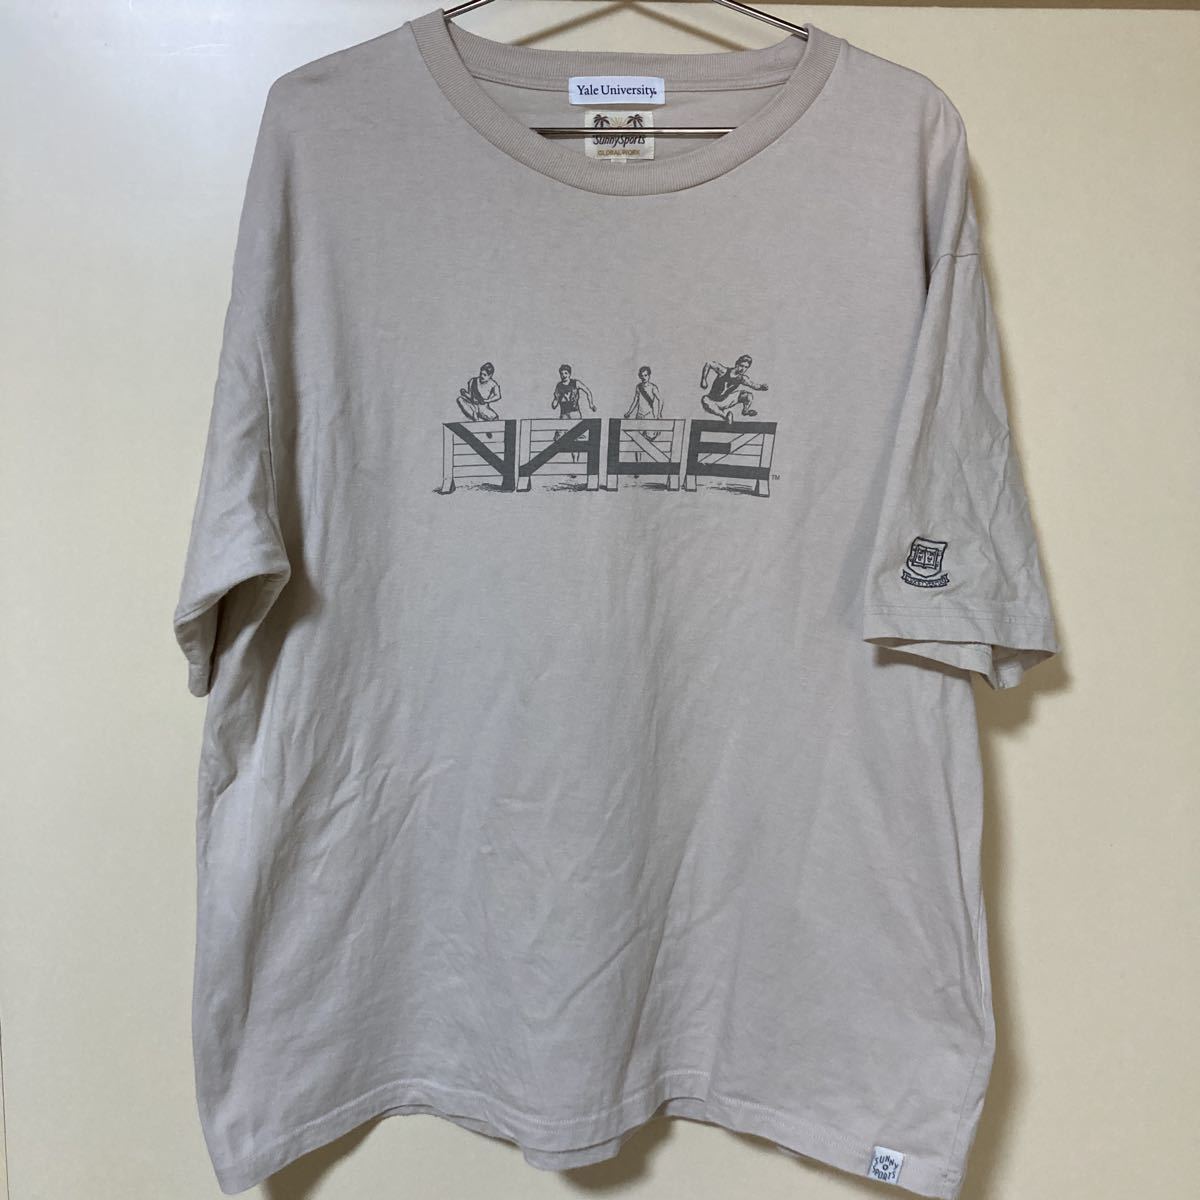 ★レア! SUNY SPORTS YALE Tシャツ 袖刺繍 size:XL イェール大学 公式ライセンス